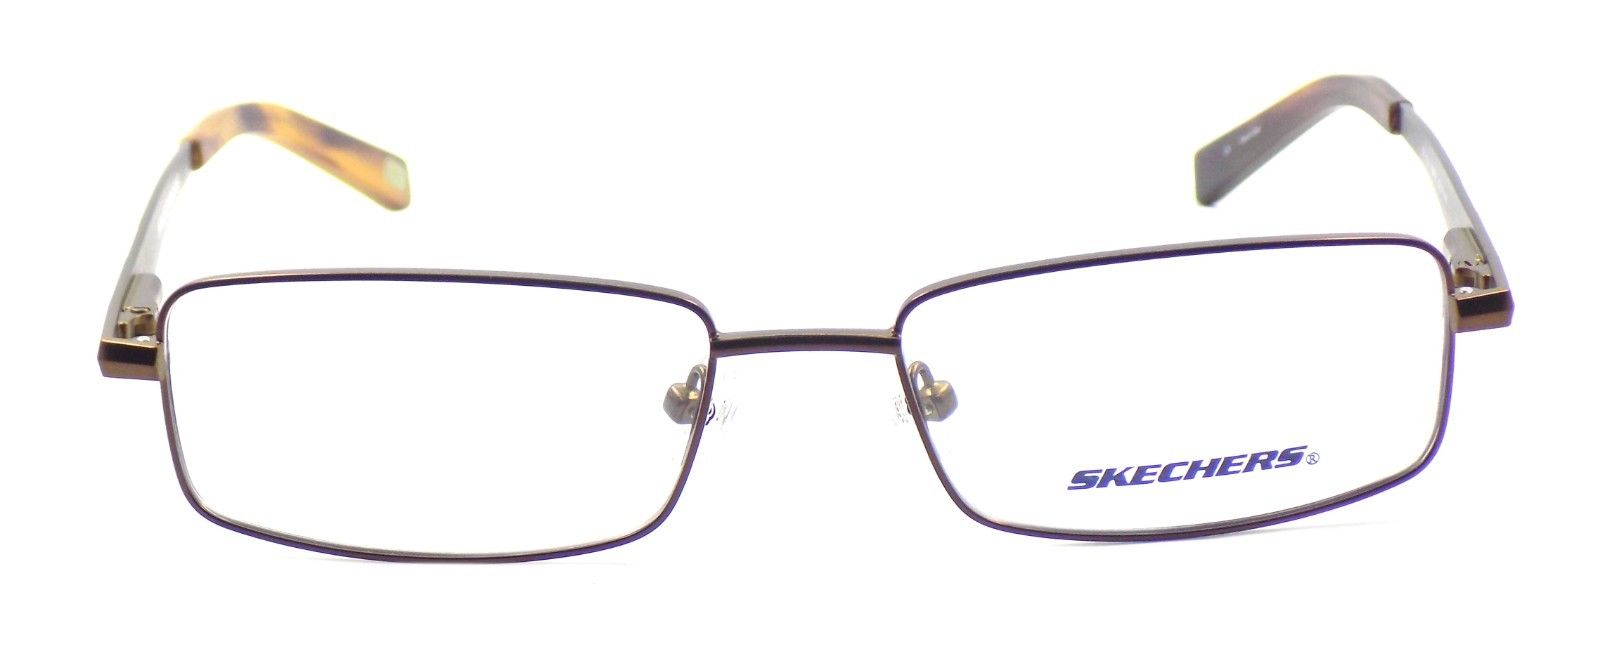 2-SKECHERS SK 3125 MBRN Men's Eyeglasses Frames 52-17-140 Matte Brown + CASE-715583032156-IKSpecs